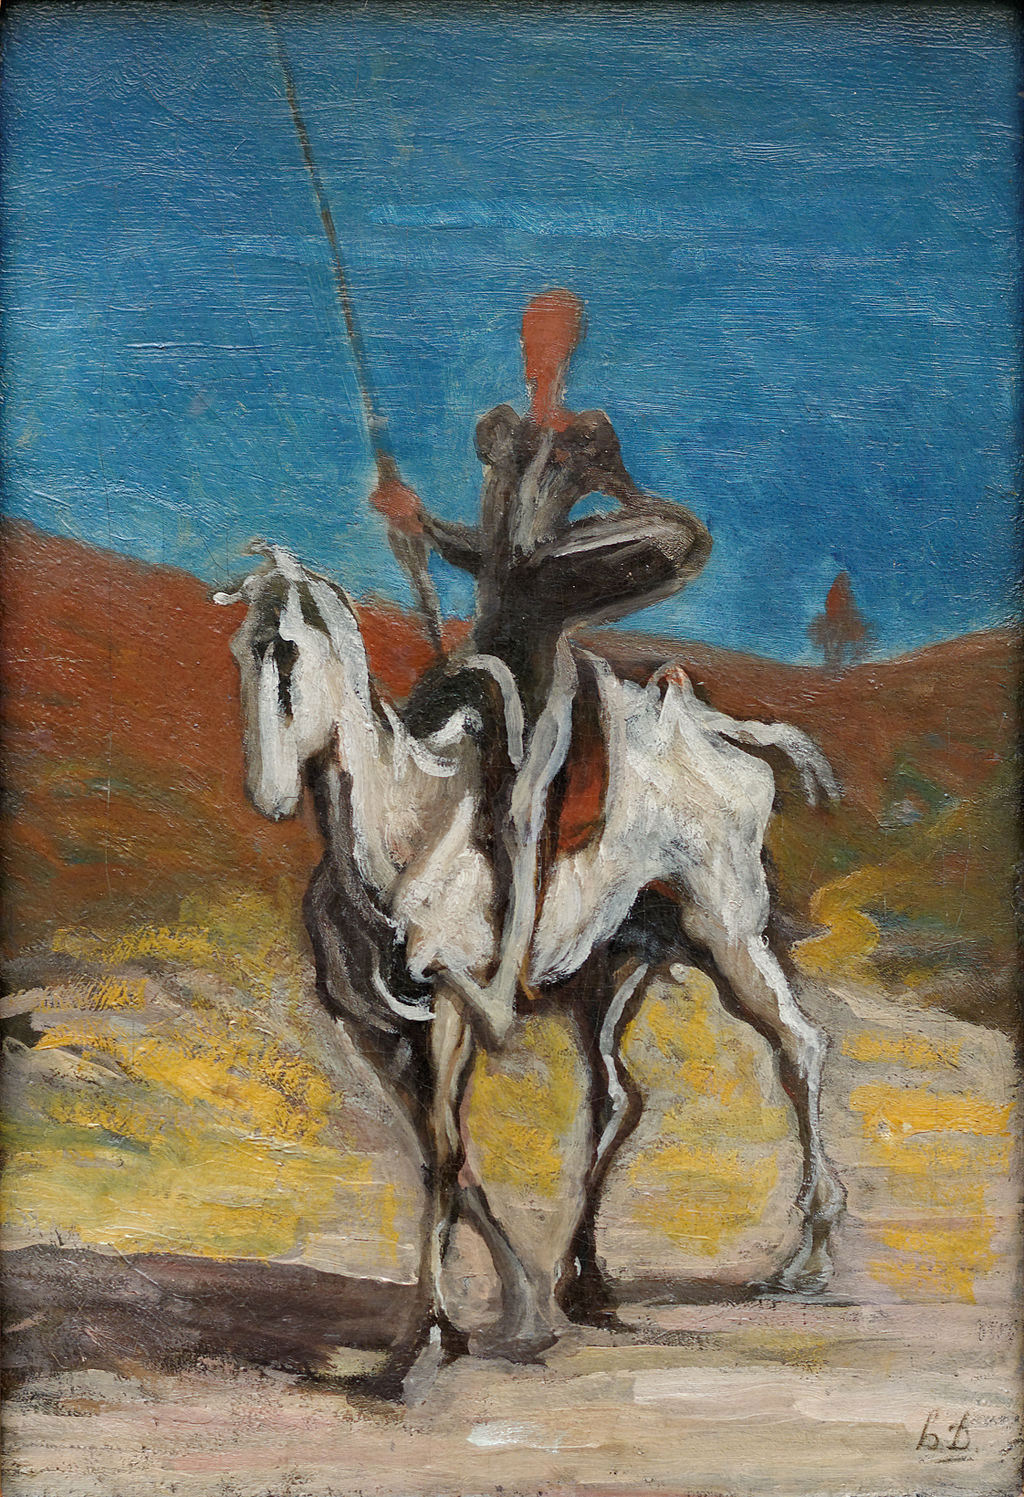 Don Quixote by Honoré Daumier (1868)